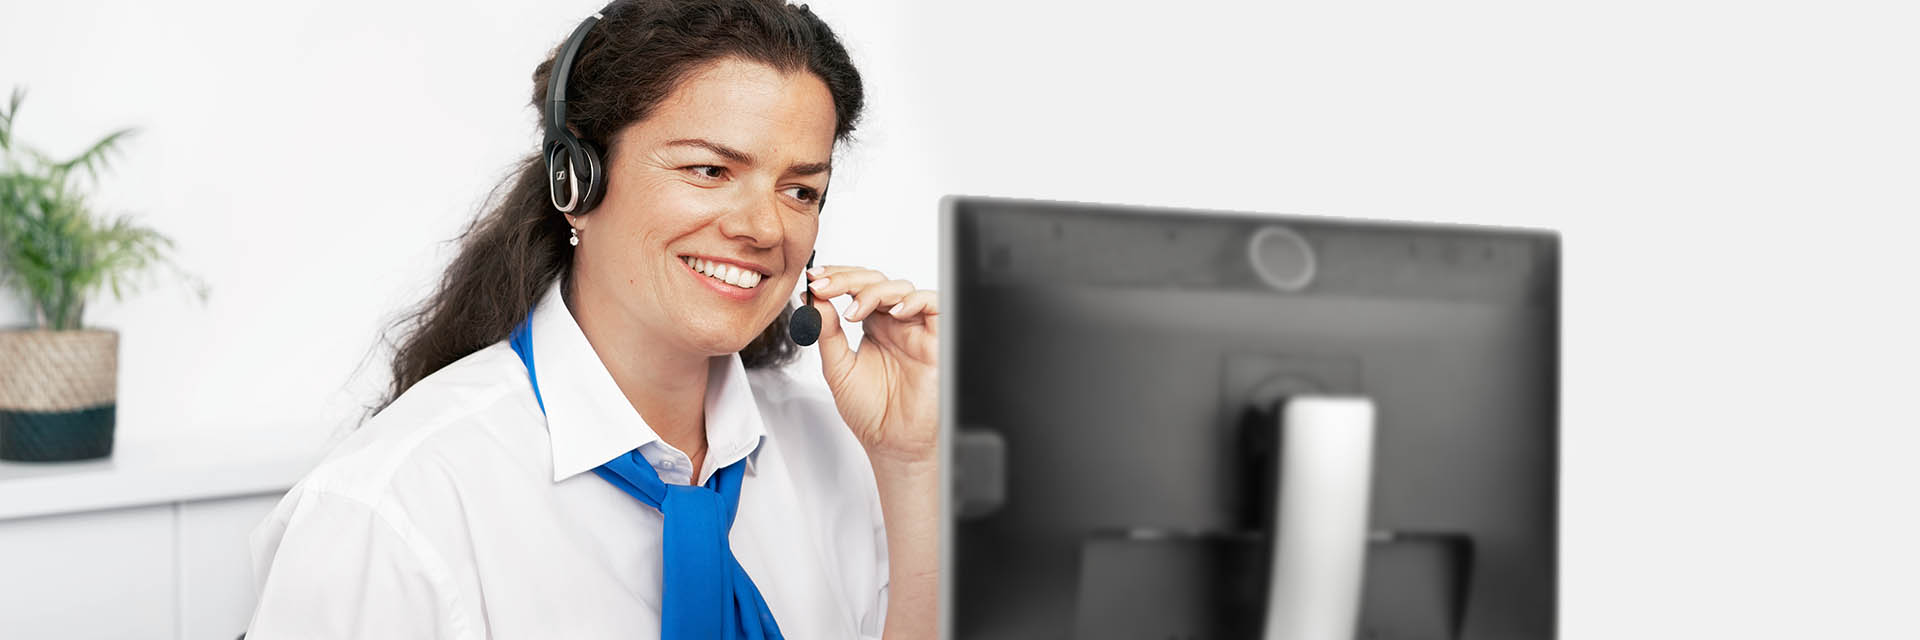 Afbeelding van vrouw in callcenter die een gesprek voert met een headset op